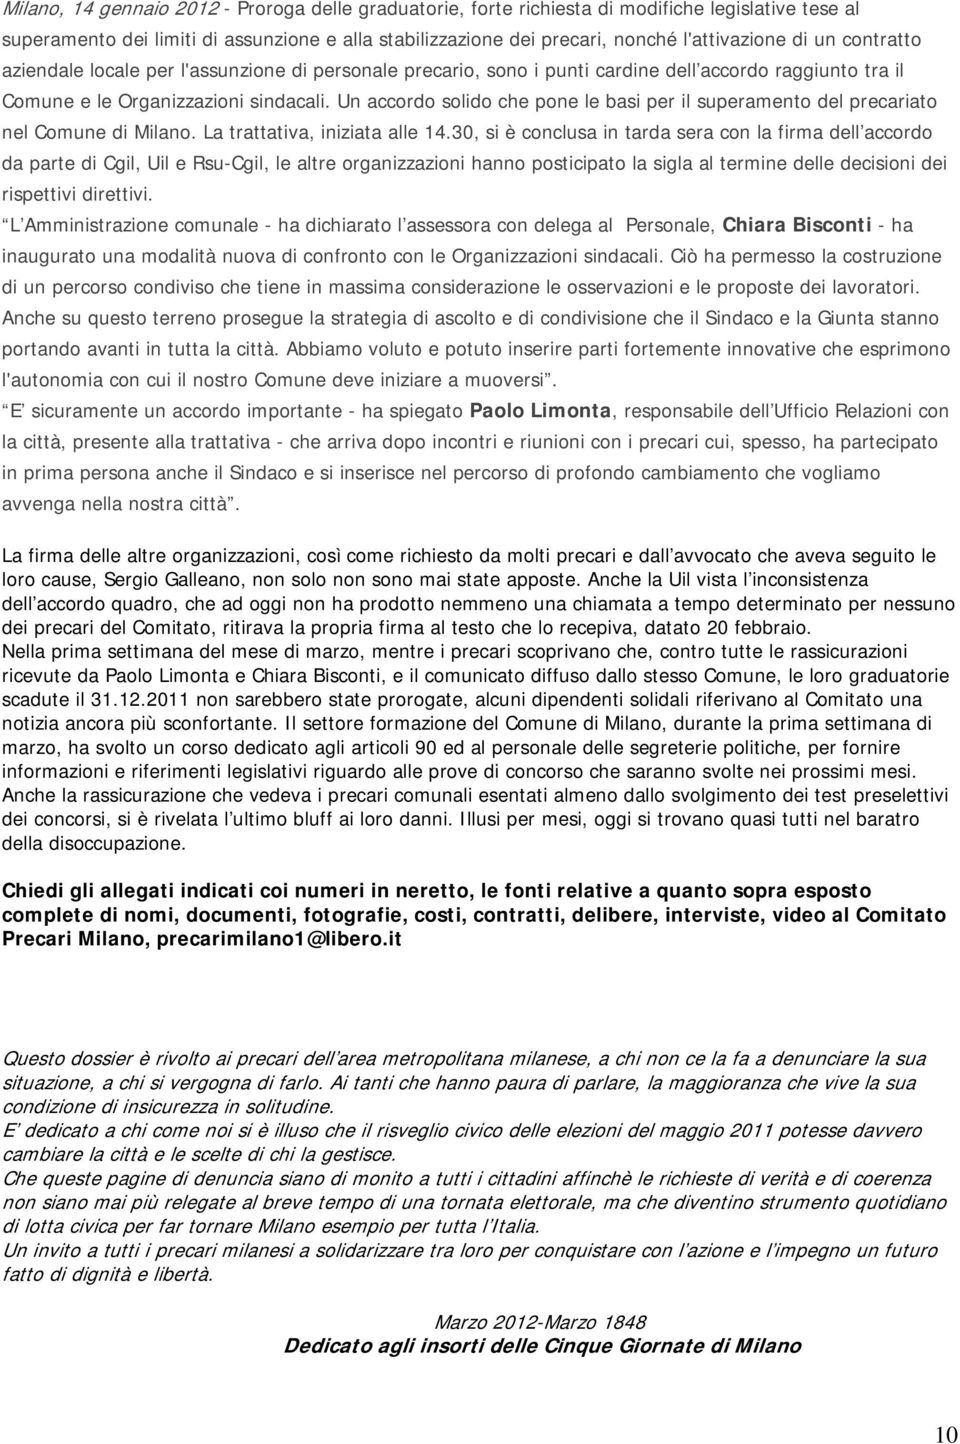 Un accordo solido che pone le basi per il superamento del precariato nel Comune di Milano. La trattativa, iniziata alle 14.